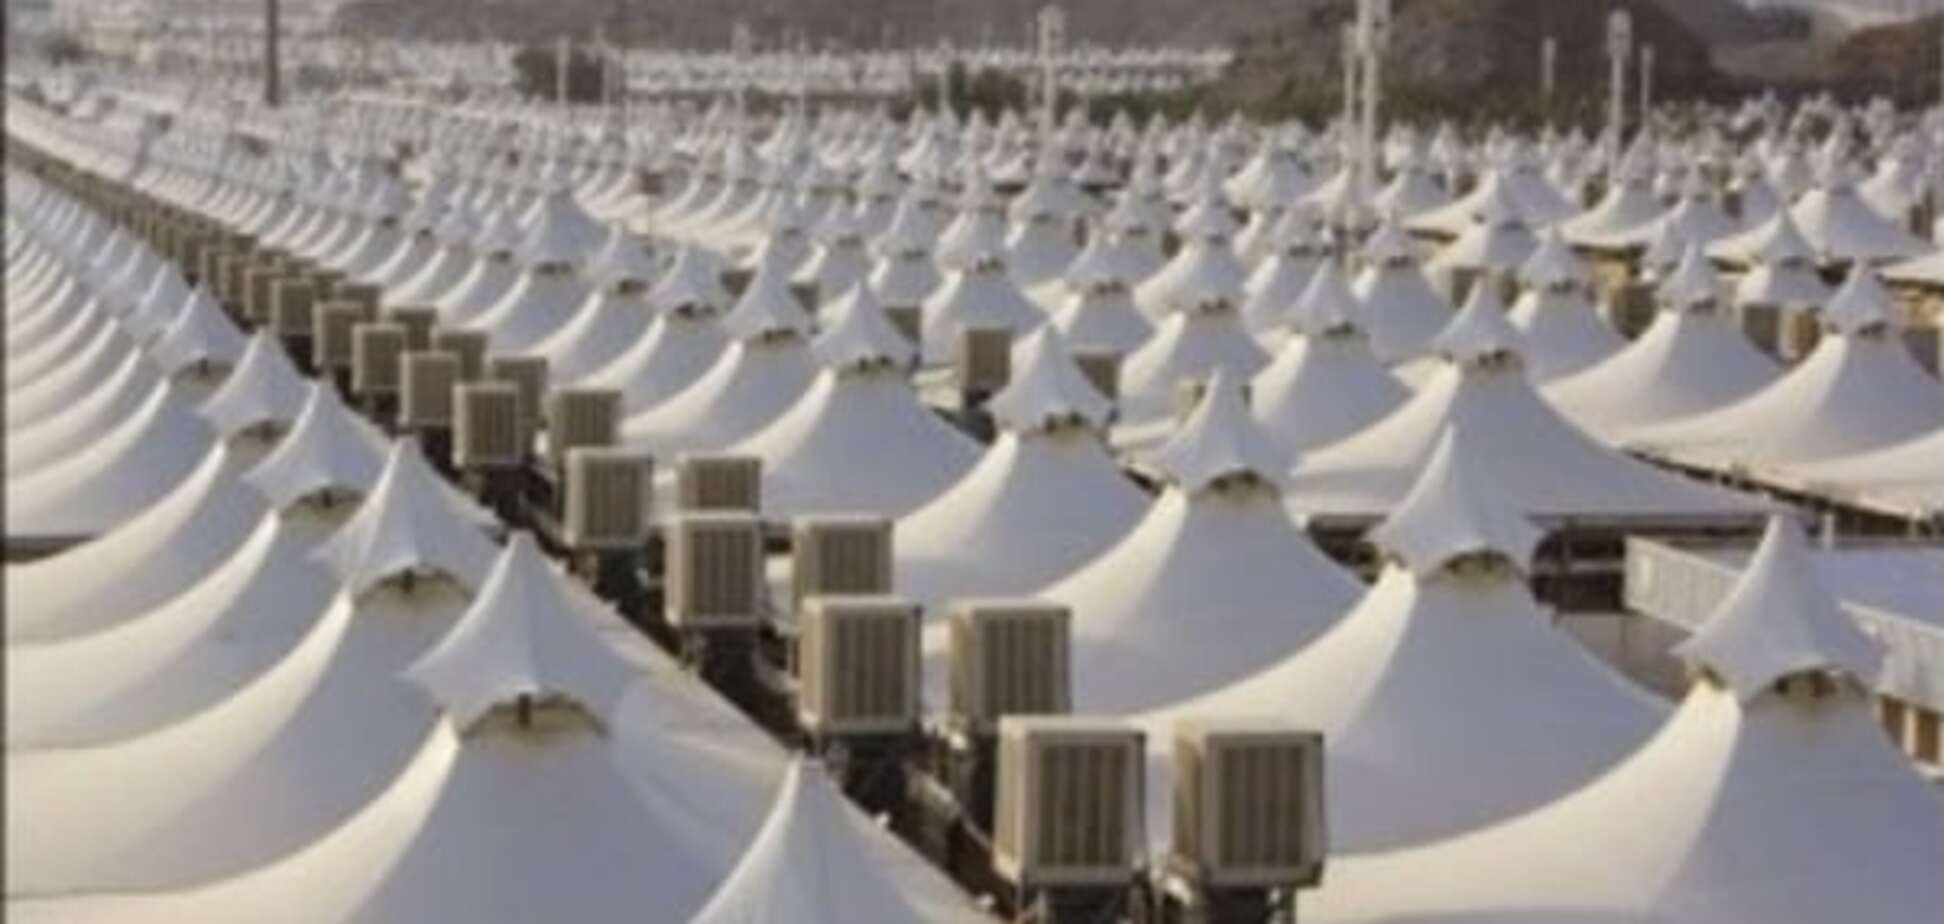 Рай для беженцев: в Саудовской Аравии простаивают 100 тыс. палаток на 3 млн человек. Фотофакт 